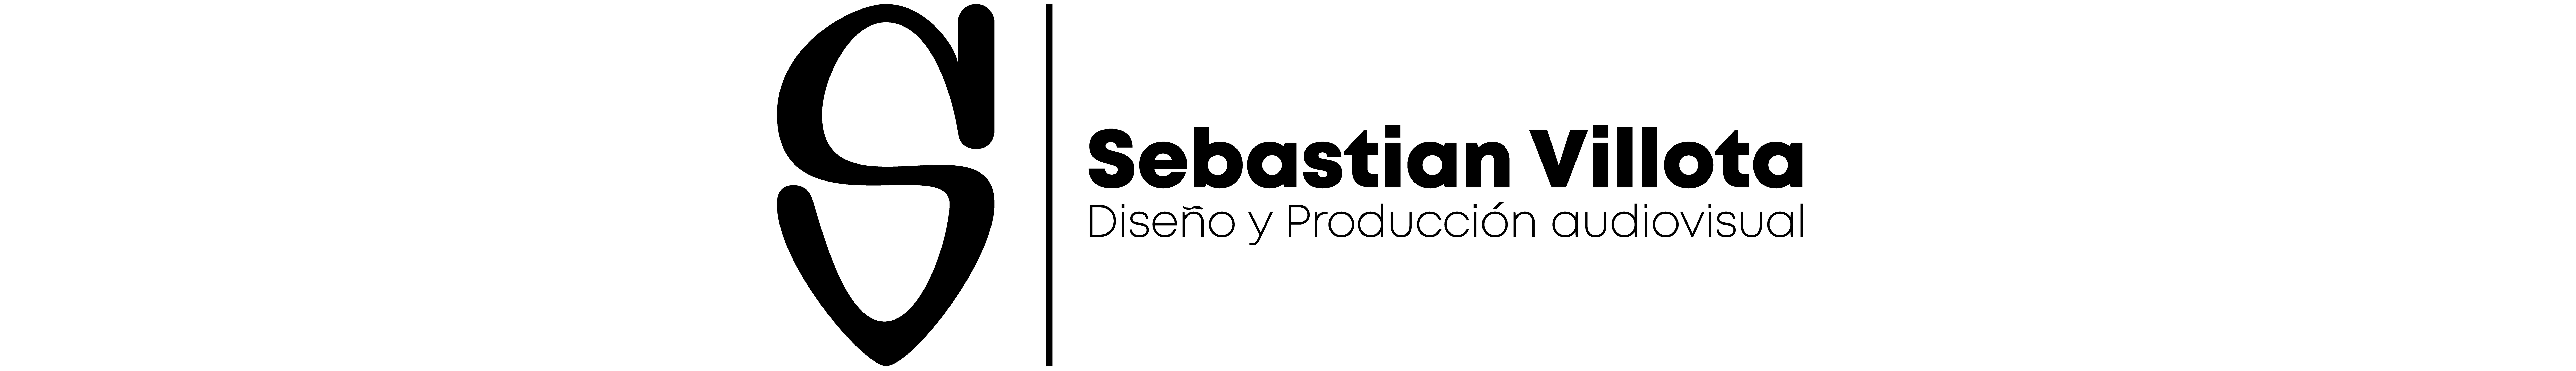 Sebastian Villota's profile banner